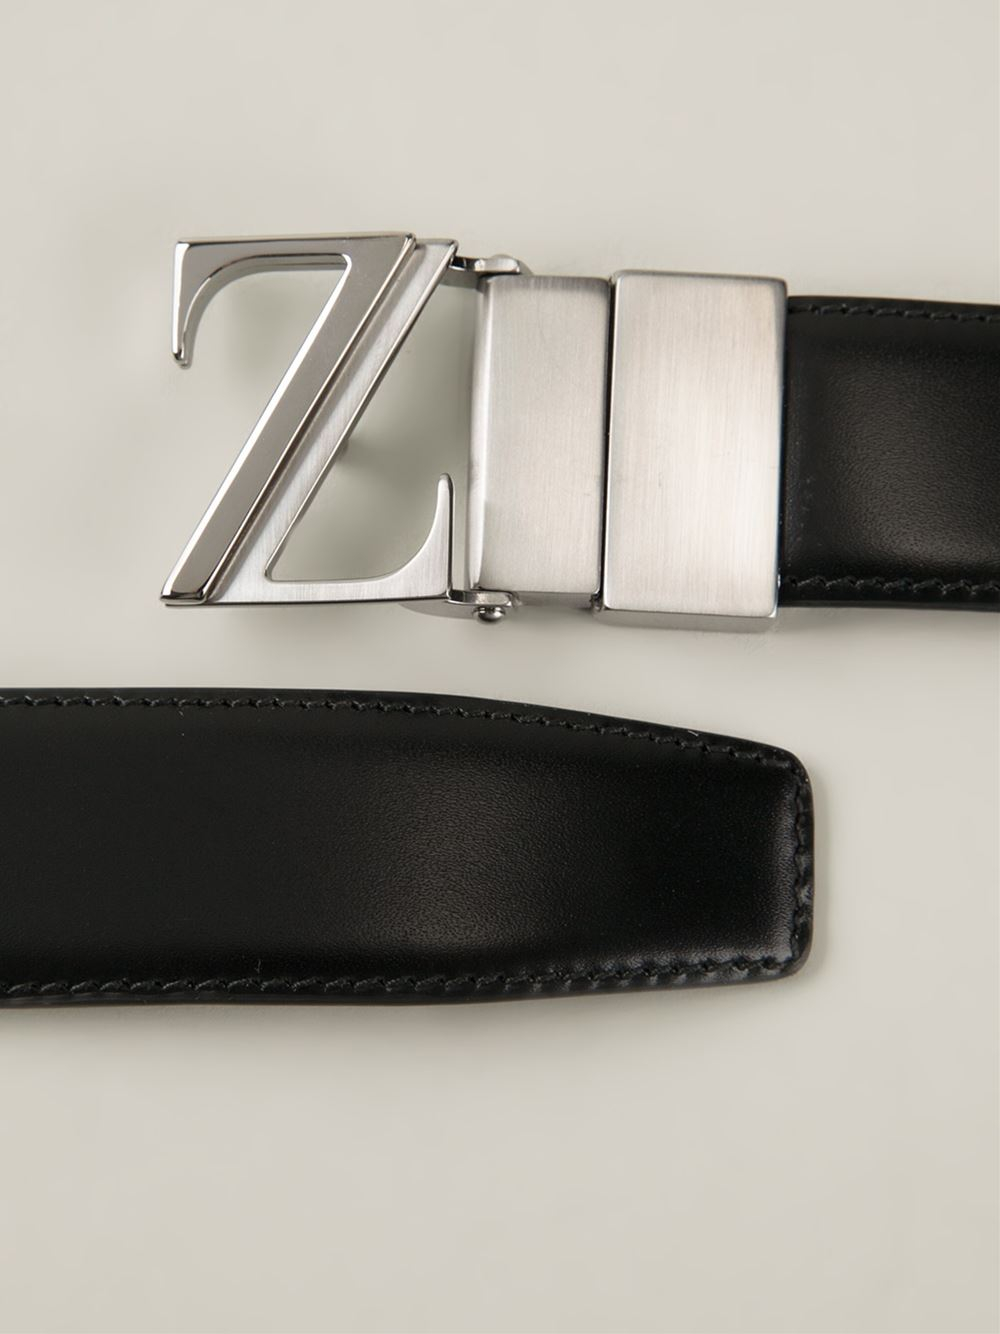 Ermenegildo Zegna Logo-Buckle Belt